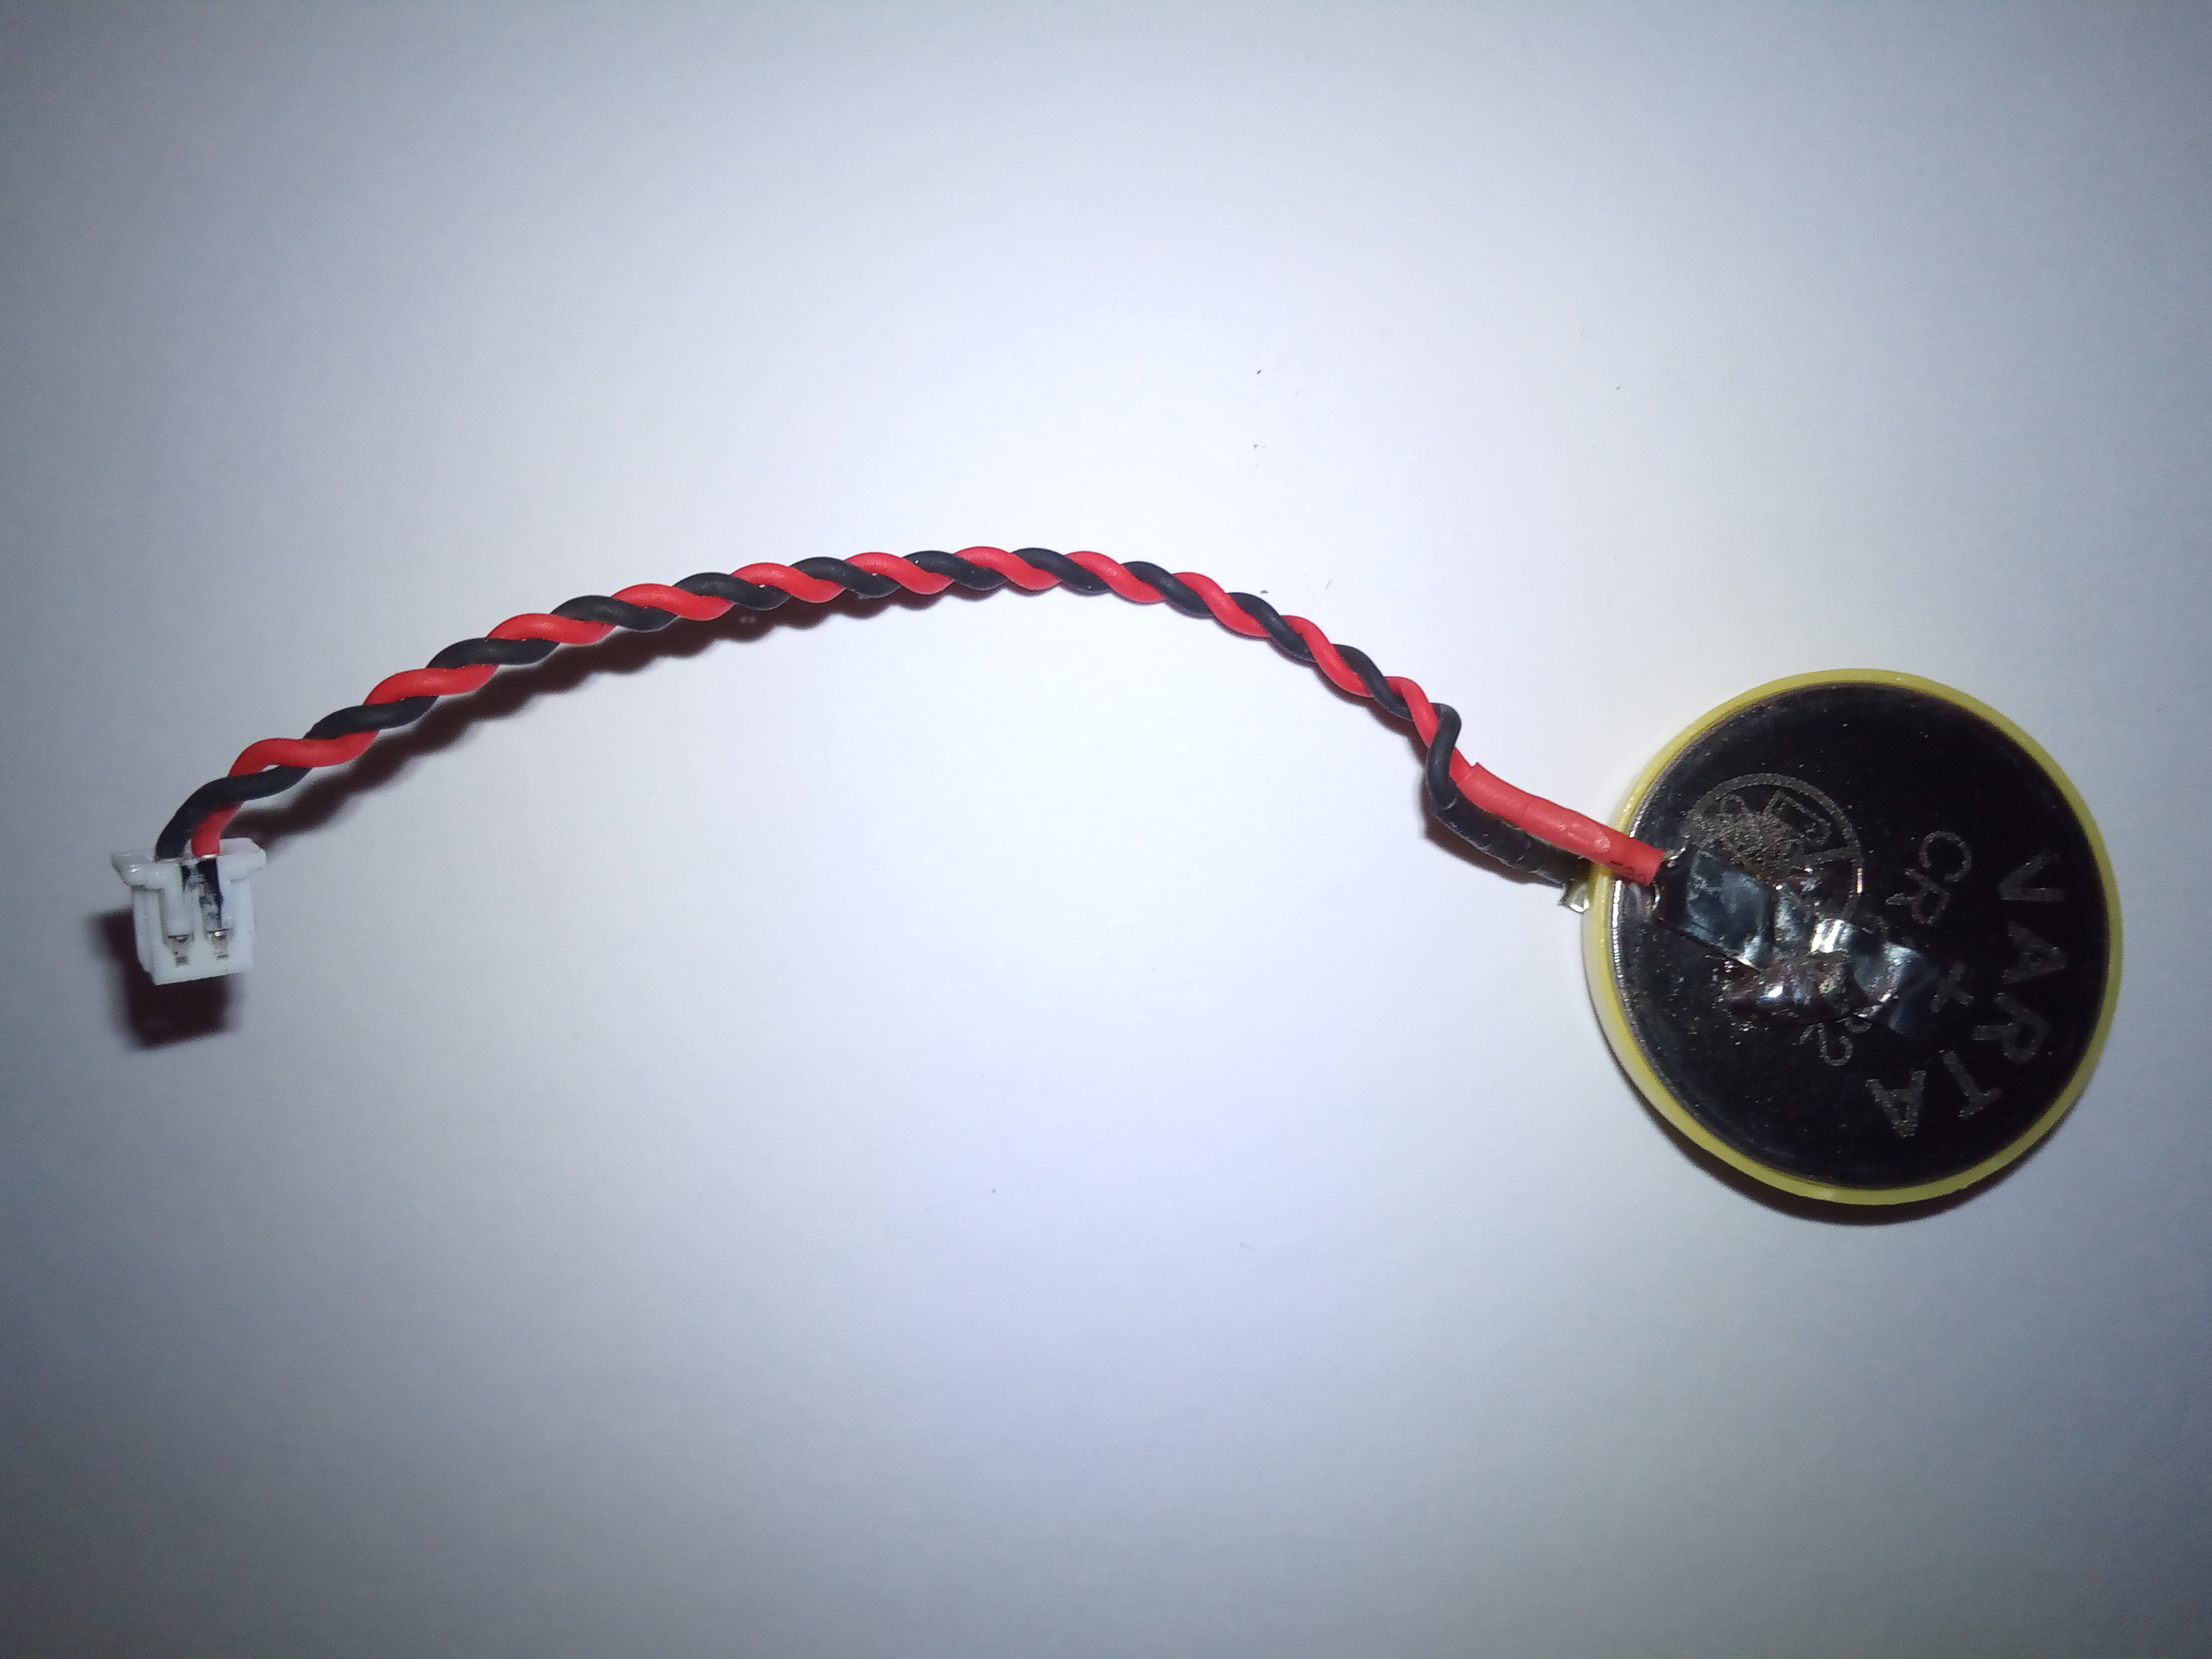 Neue CR2032 Knopfzelle mit Isolationsring an Schweißband gelötet